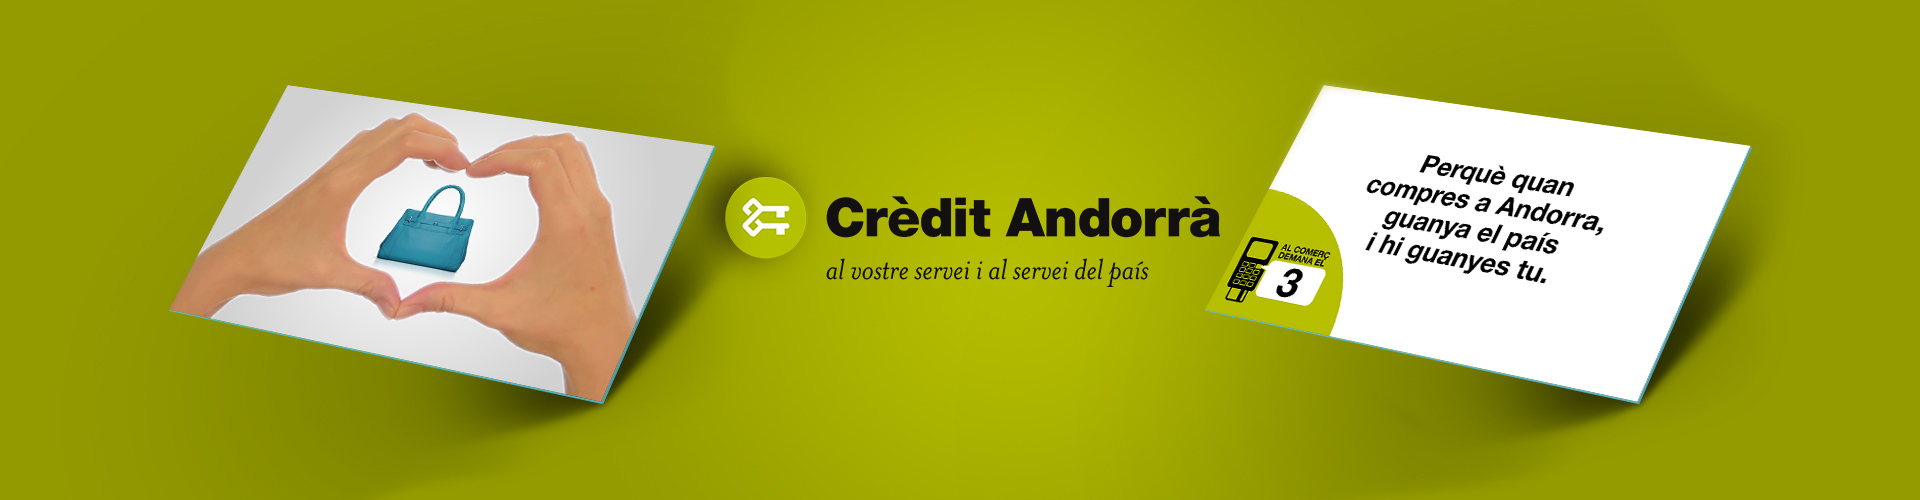 1920x500 Credit Andorra